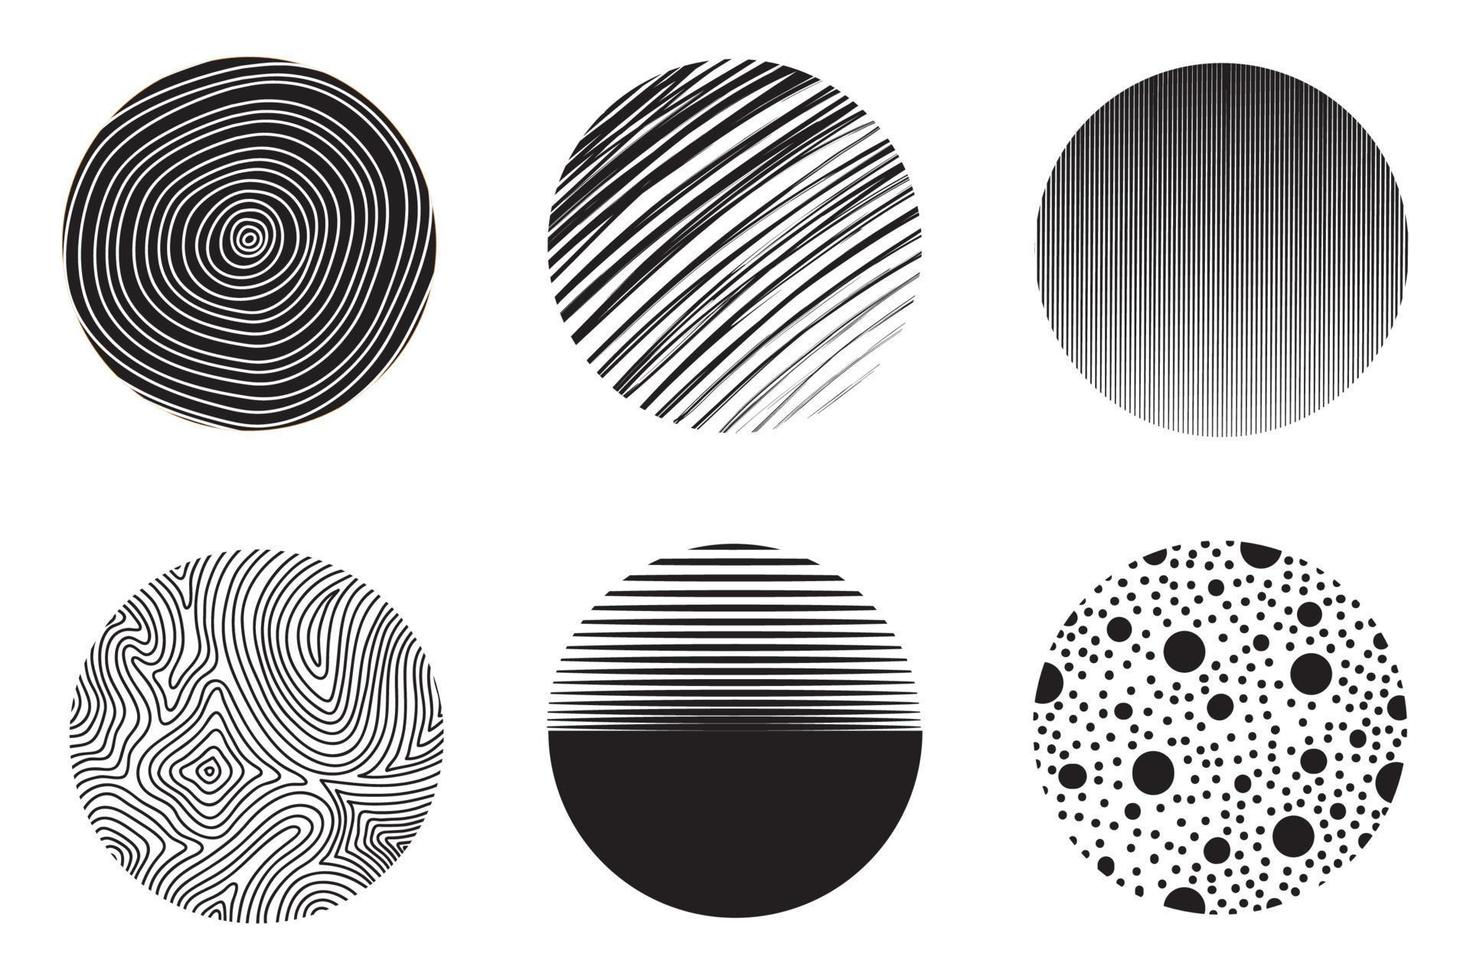 uppsättning av runda abstrakta svarta bakgrunder eller mönster. handritade doodle former. fläckar, droppar, kurvor, linjer. samtida modern trendig vektorillustration. affischer, mallar för ikoner för sociala medier vektor